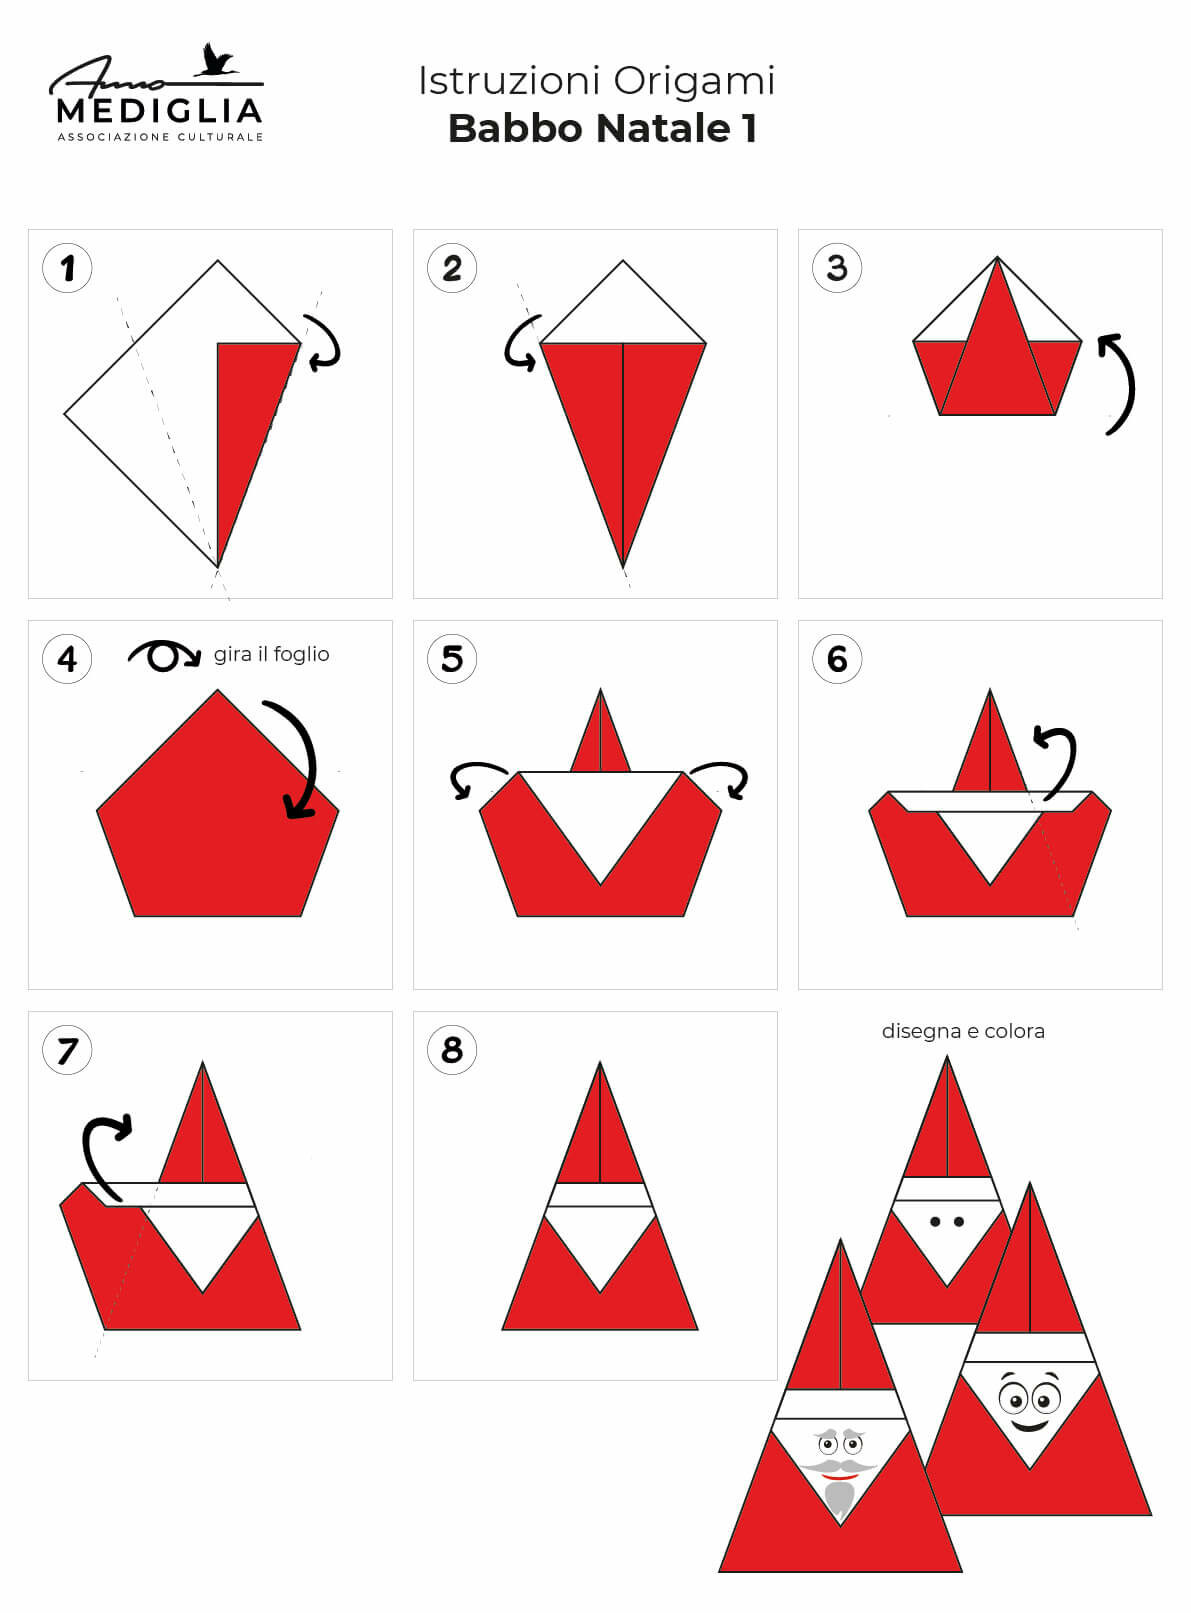 5 origami per bambini  Origami bambini, Origami semplici per bambini,  Origami semplici